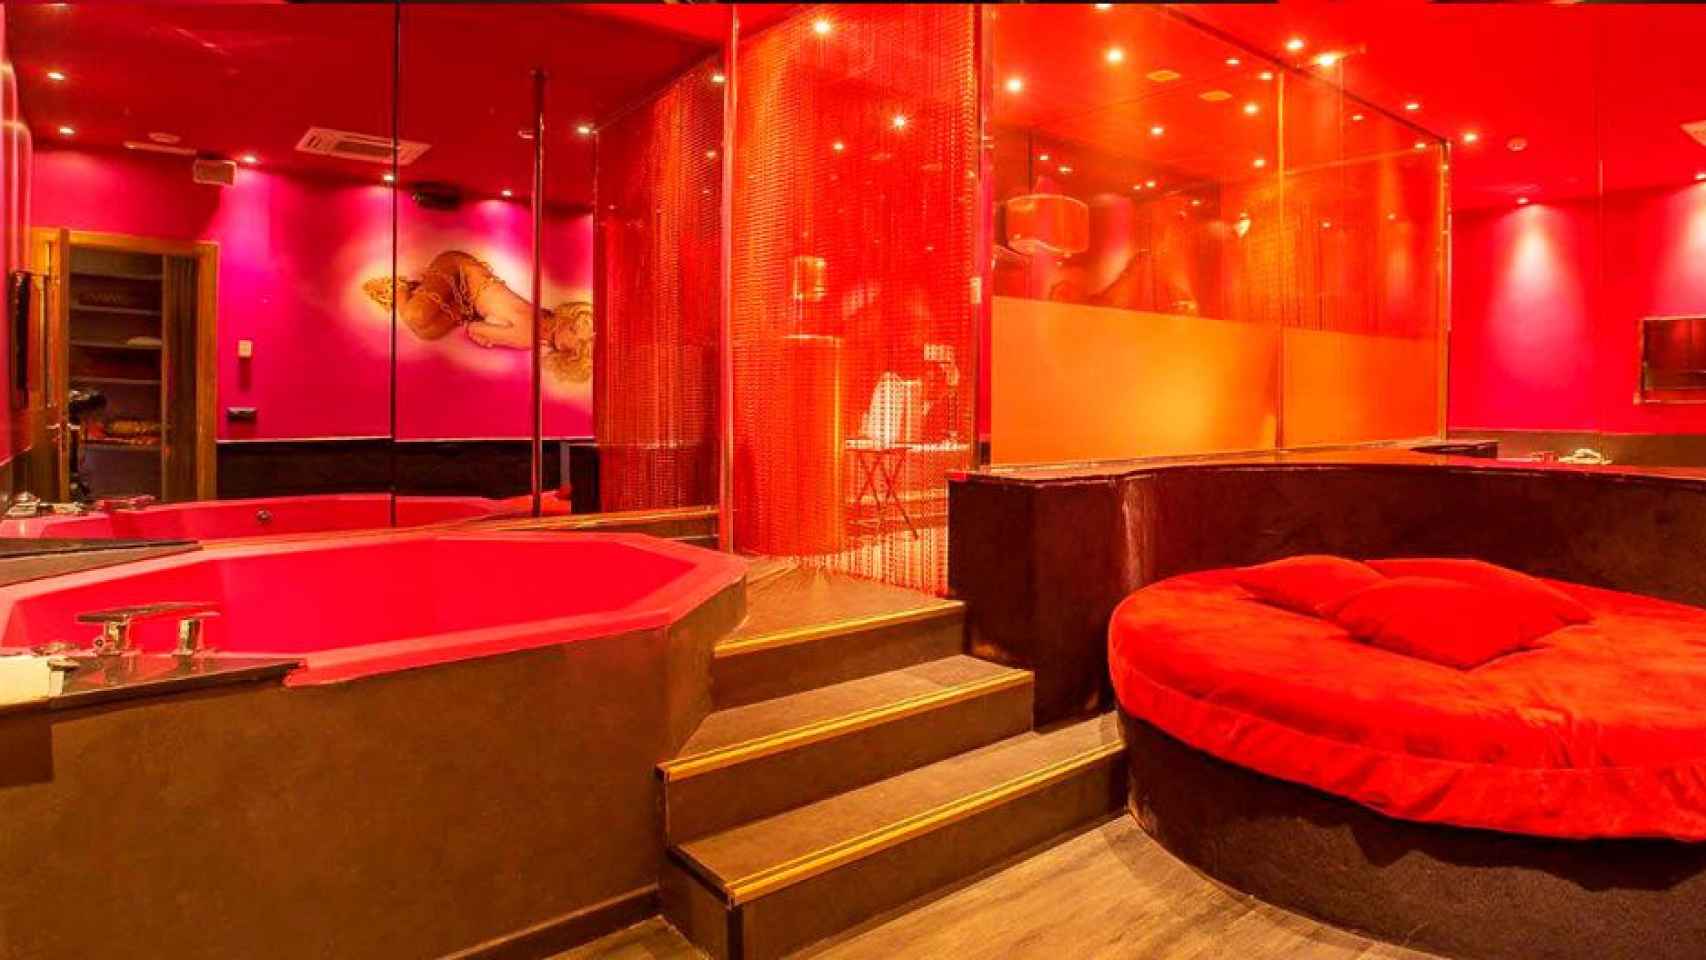 Imagen de Dom Champagne Club, sala para adultos de Barcelona donde habrá sexo en vivo, malabarismo y otros espectáculos / CG